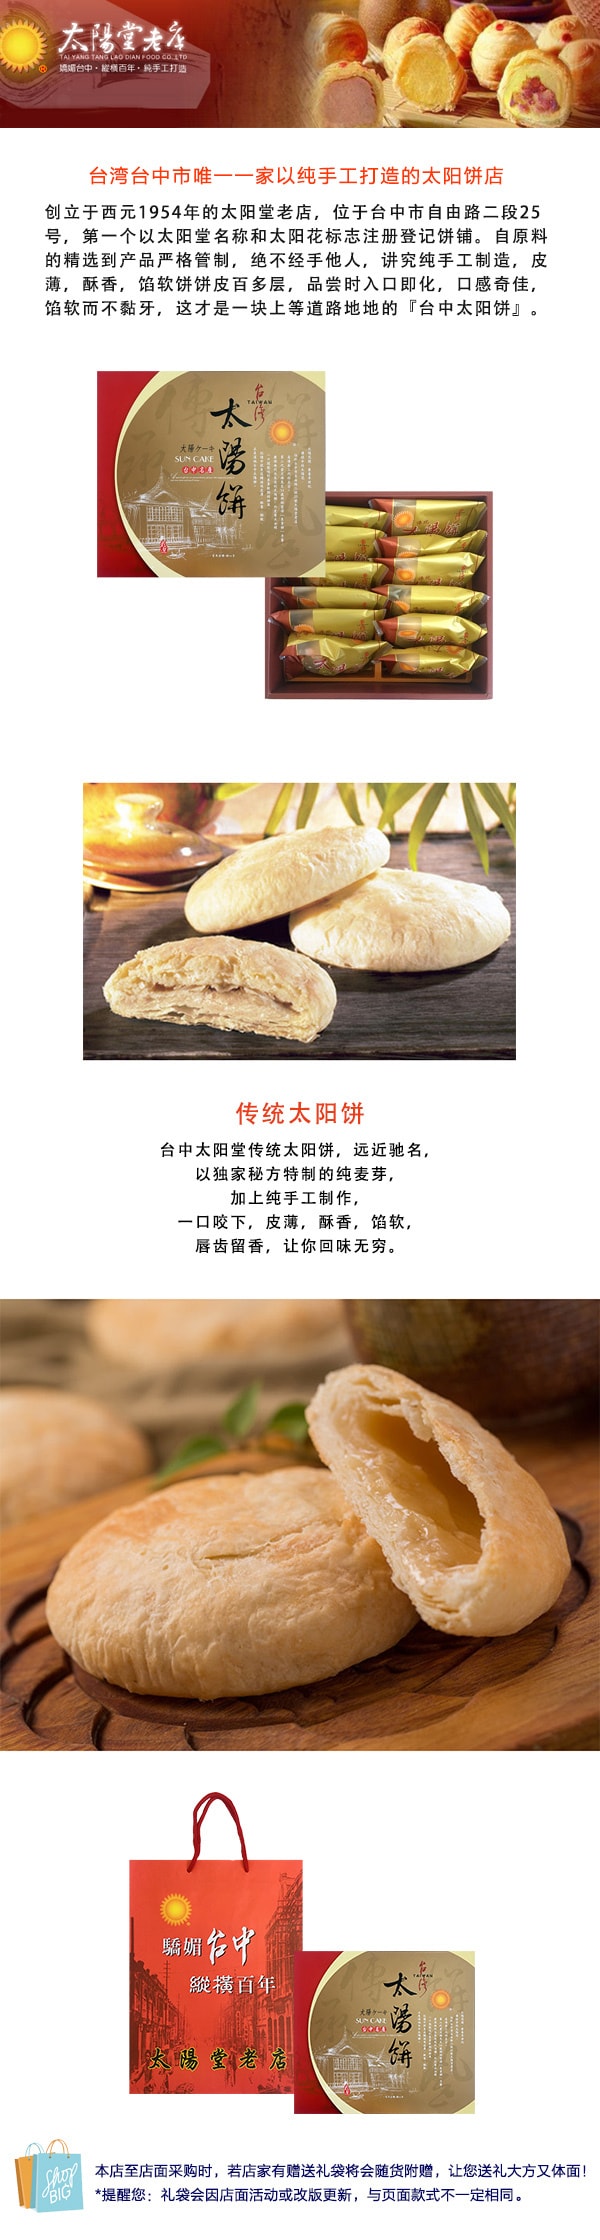 [台湾直邮] 太阳堂老店 传统太阳饼 12枚入 (订购此商品可能造成订单延误至5-7日出货)